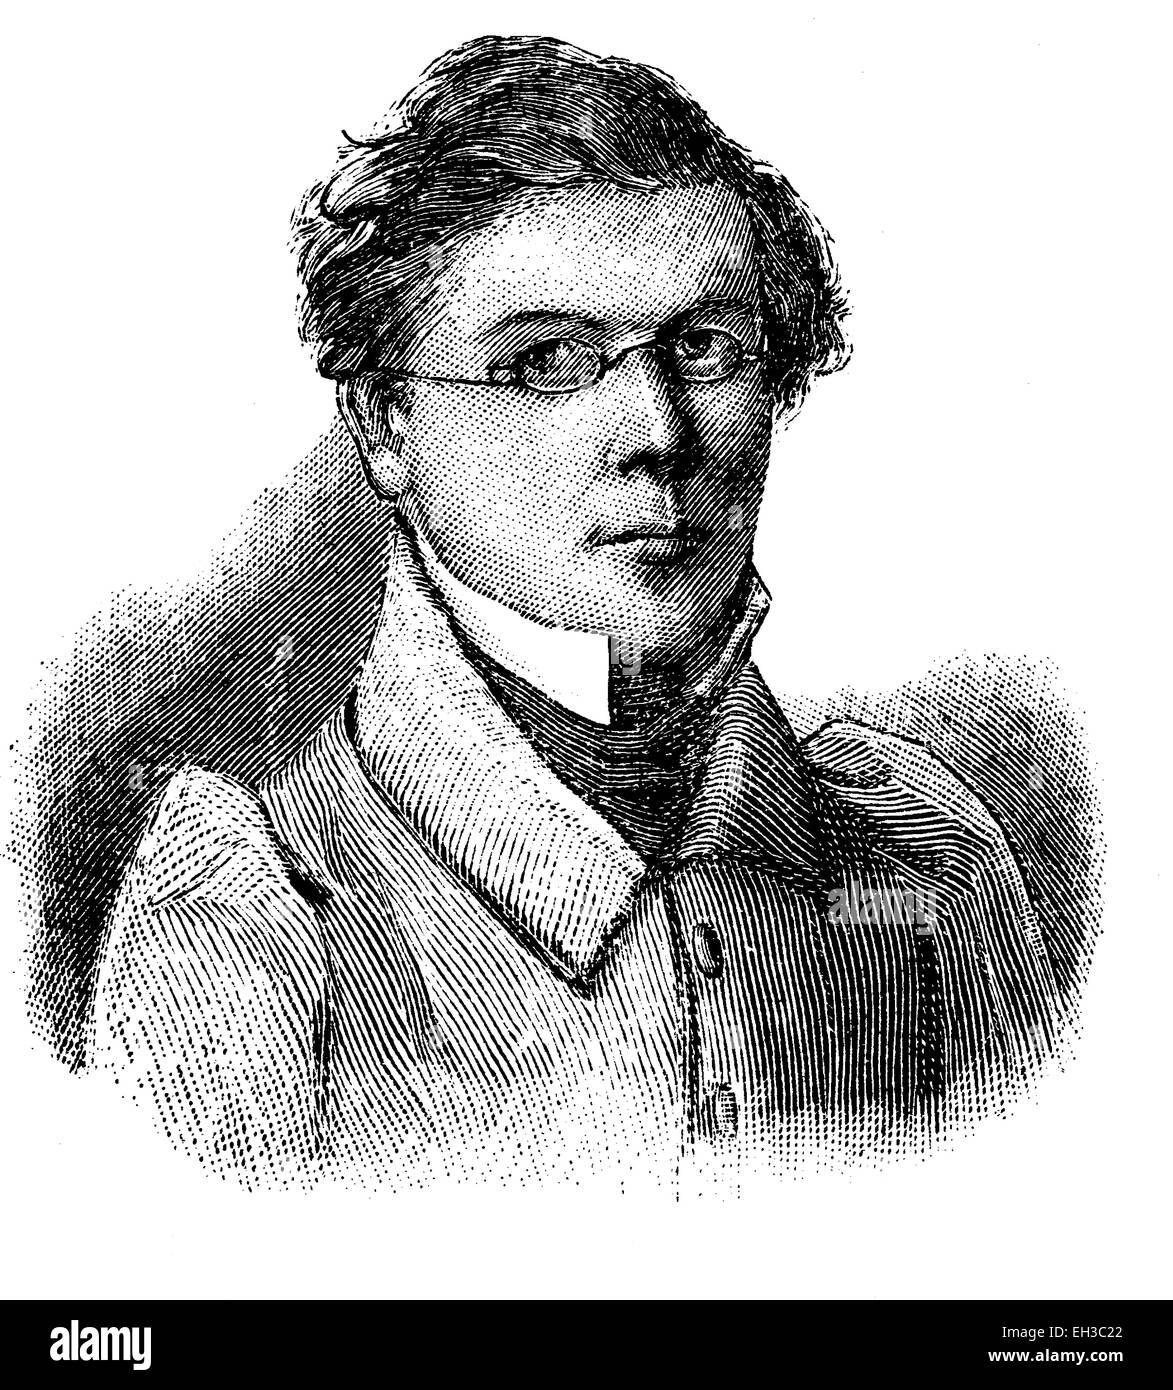 Fritz Reuter, 1810-1874, de son vrai nom Heinrich Friedrich Christian Ludwig Reuter, considéré comme l'un des plus importants poètes et écrivains allemands du bas allemand, gravure sur bois historique, ch. 1880 Banque D'Images